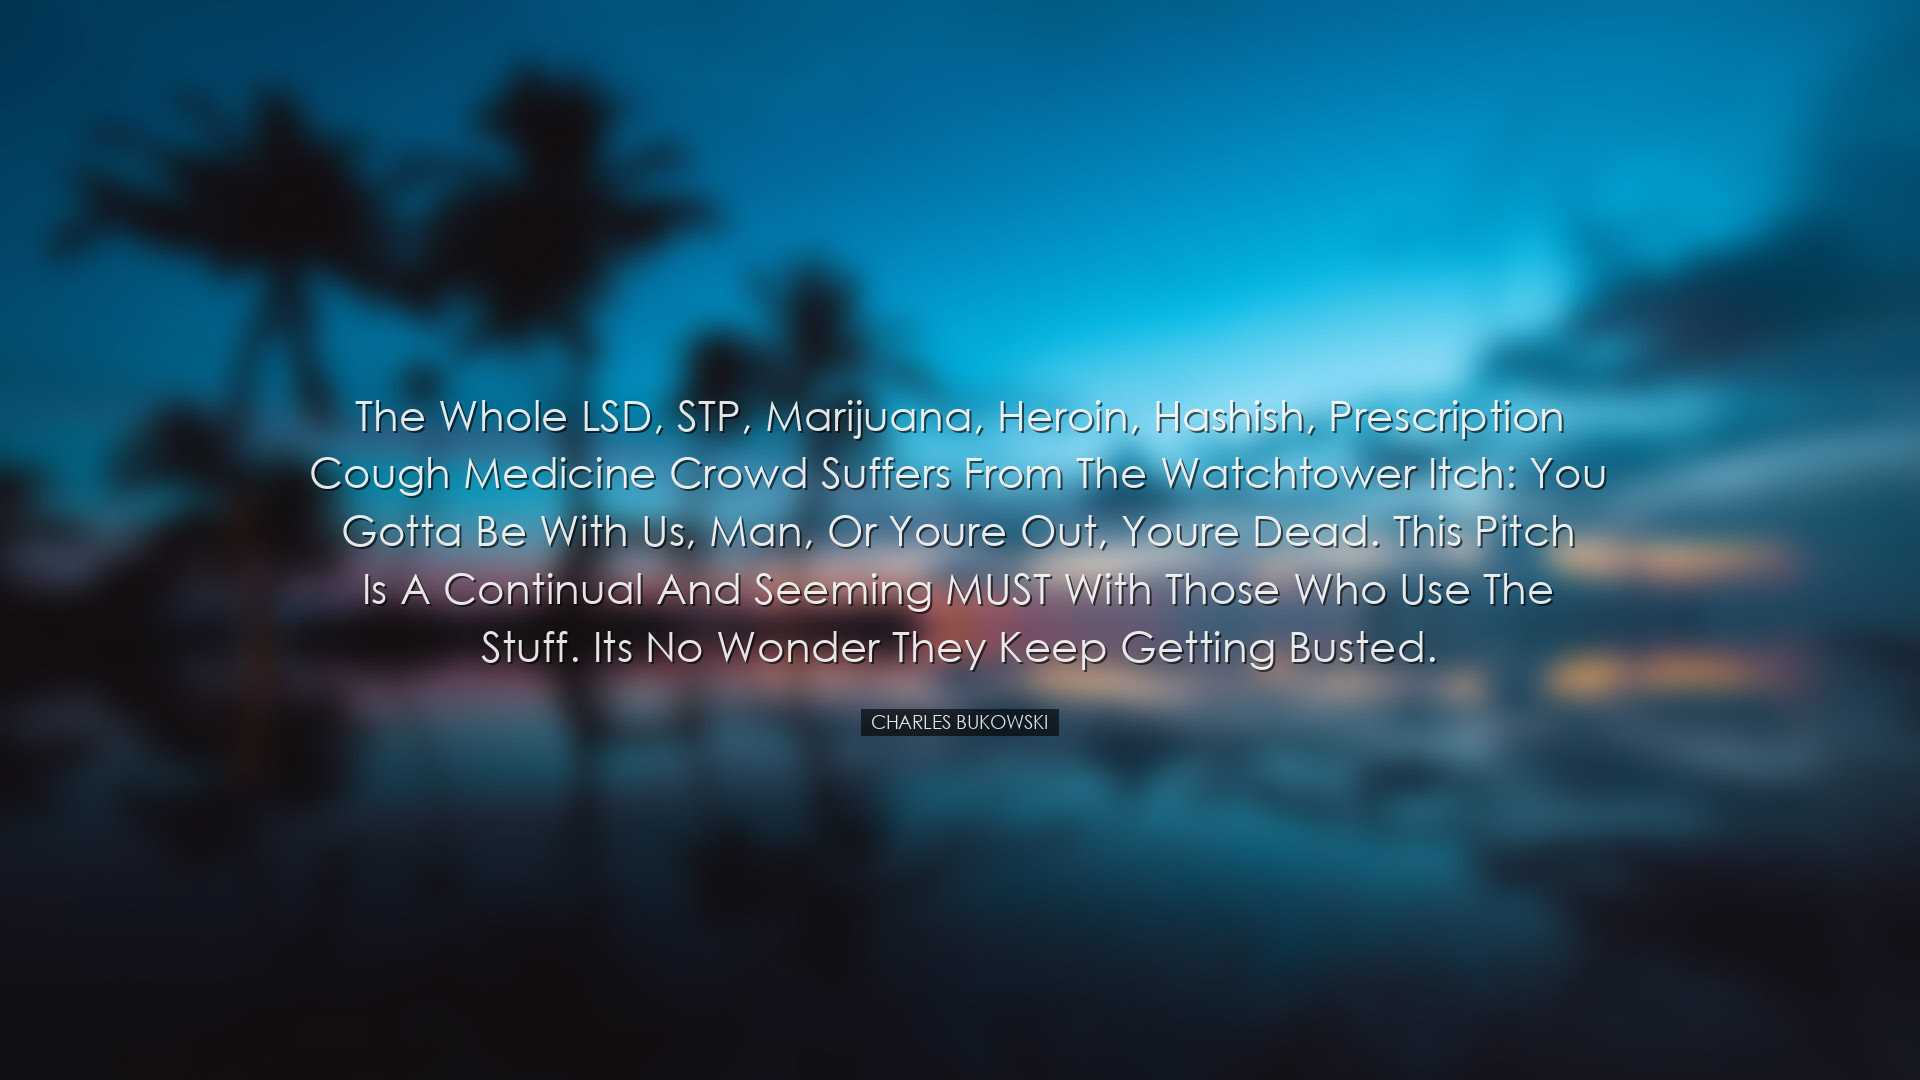 The whole LSD, STP, marijuana, heroin, hashish, prescription cough